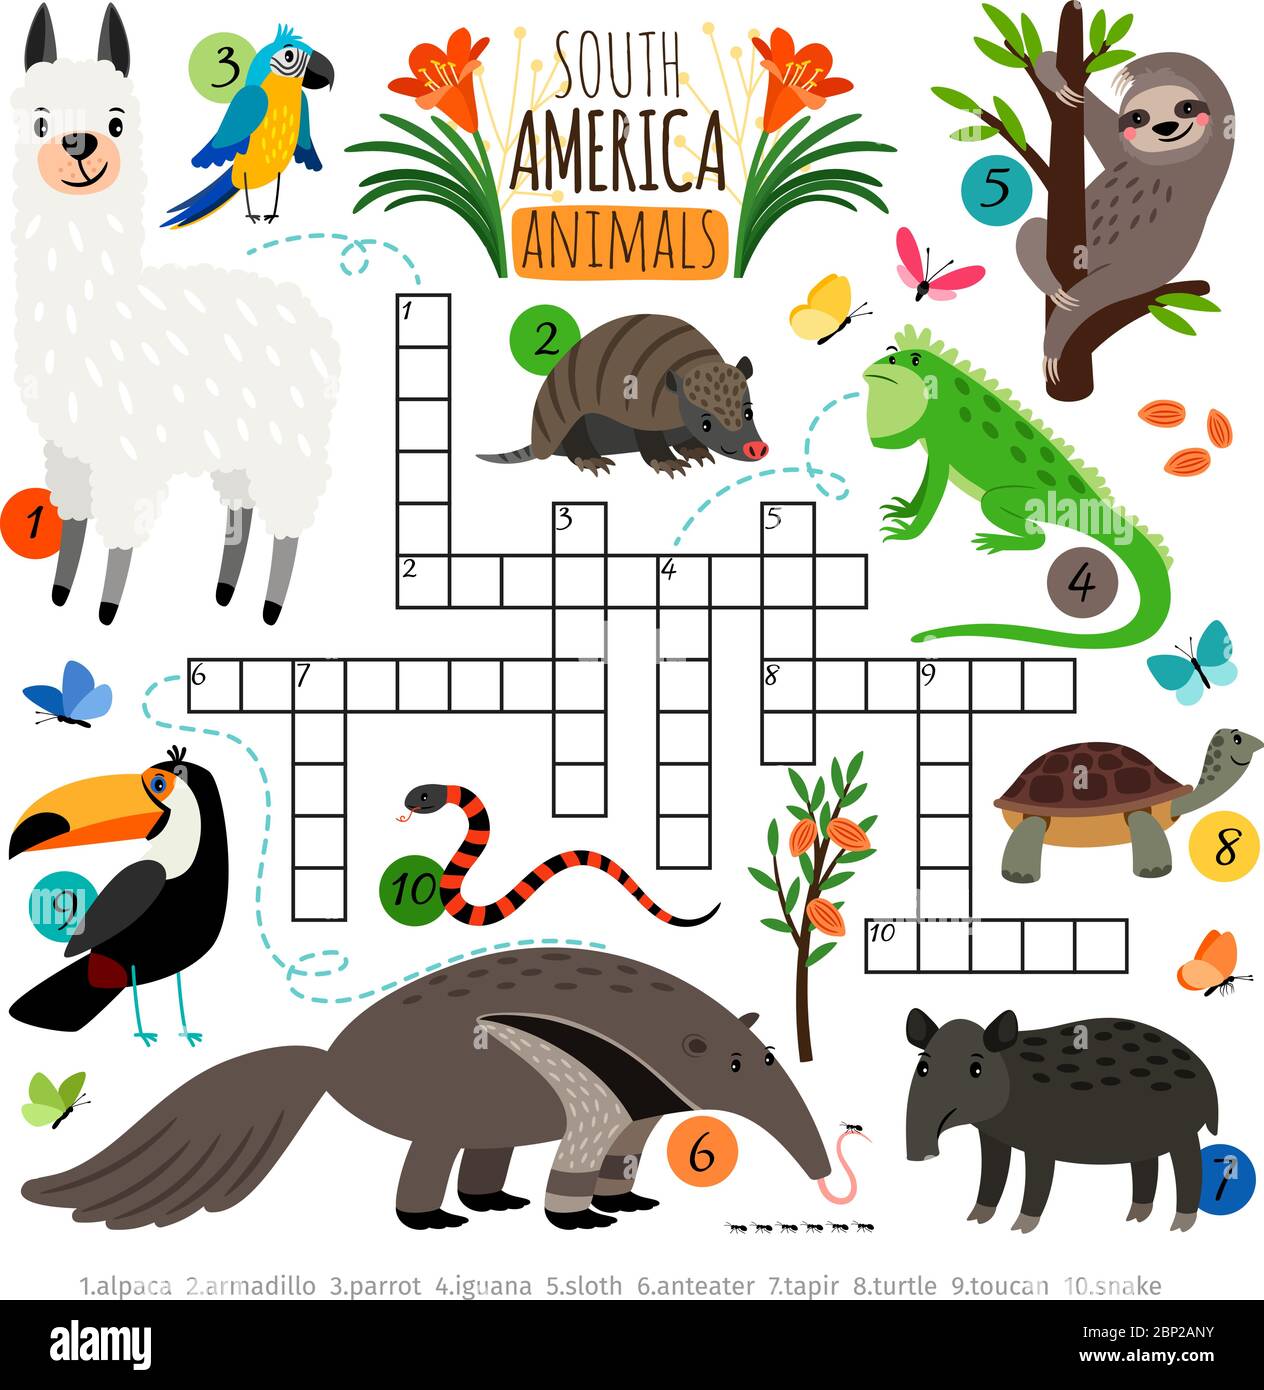 Kreuzworträtsel der amerikanischen Tiere. Südamerika Kinder Kreuzwortsuche Puzzle-Spiel mit Lama und Tukan, Ameisenbär und Faultier, Vektor-Illustration Stock Vektor